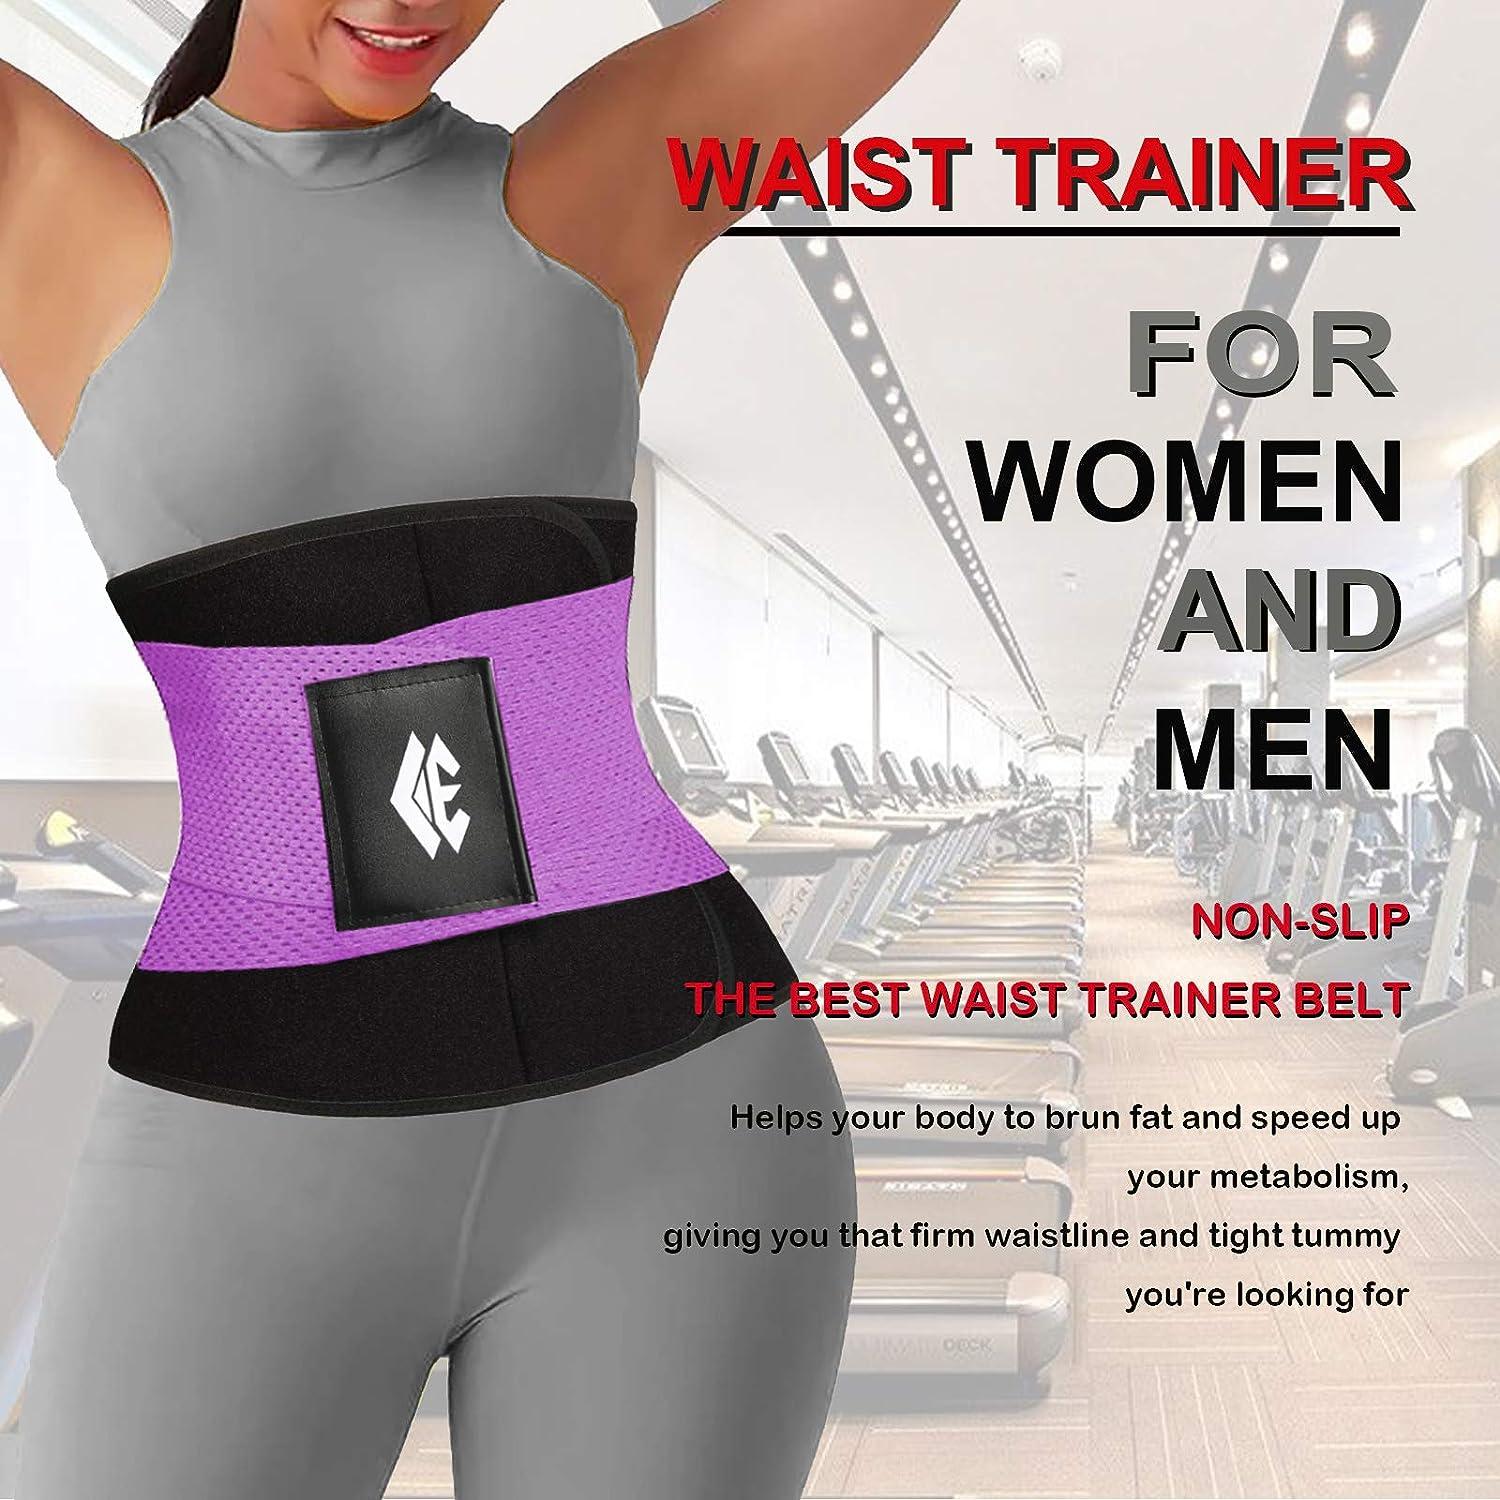 Men Waist Trimmer Belt Wrap Trainer Hot Swear Shirt Corset Slimming Body  Shaper